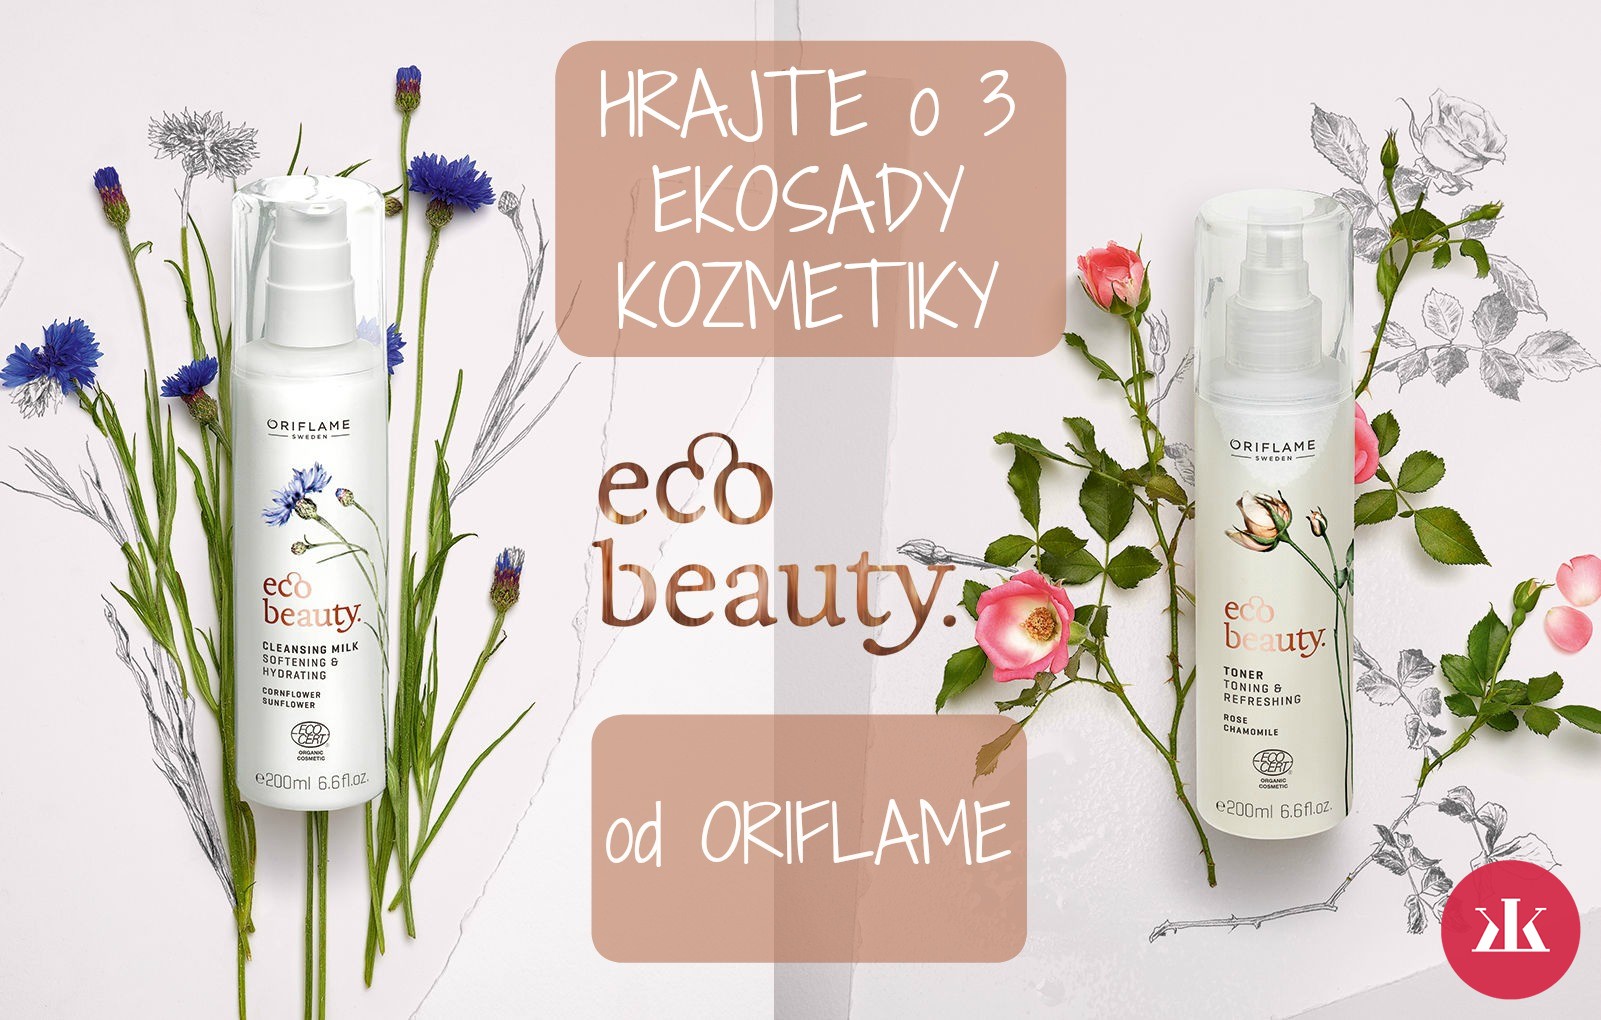 vyhrajte PRíRODNÚ kozmetiku eco beauty od oriflame